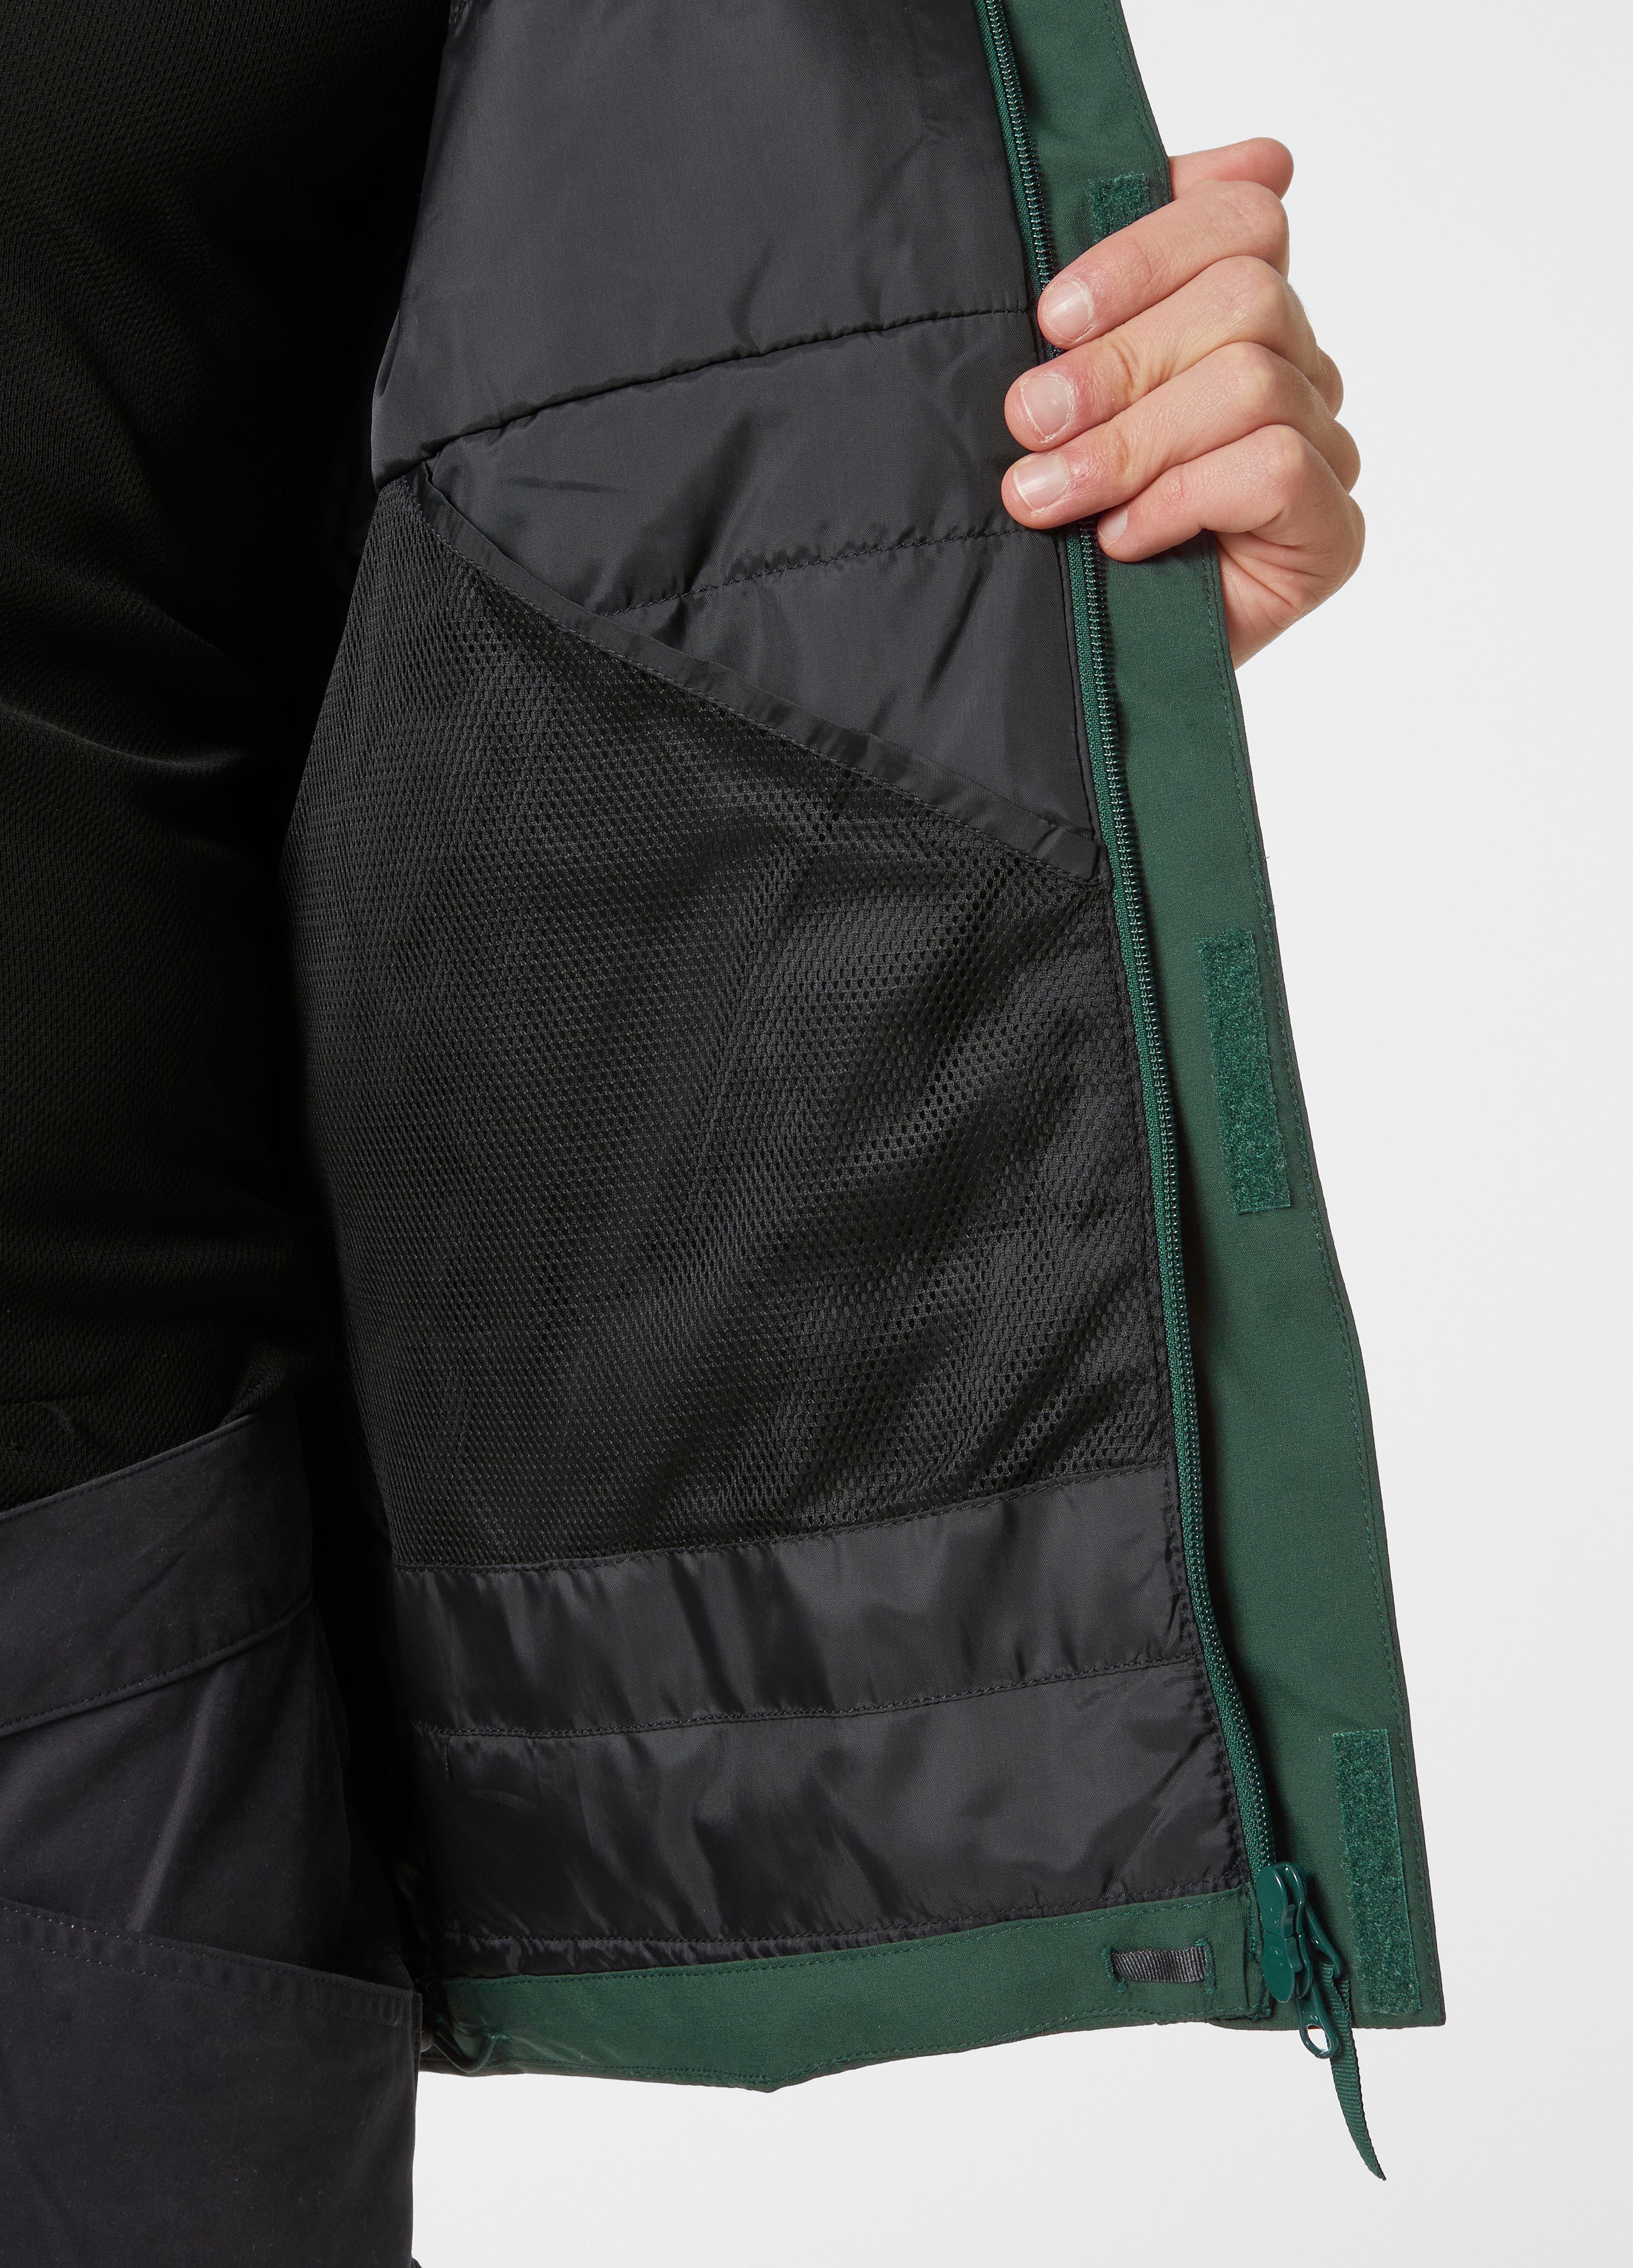 Helly Hansen Banff Insulated Jacket | Helly Hansen | Portwest Ireland